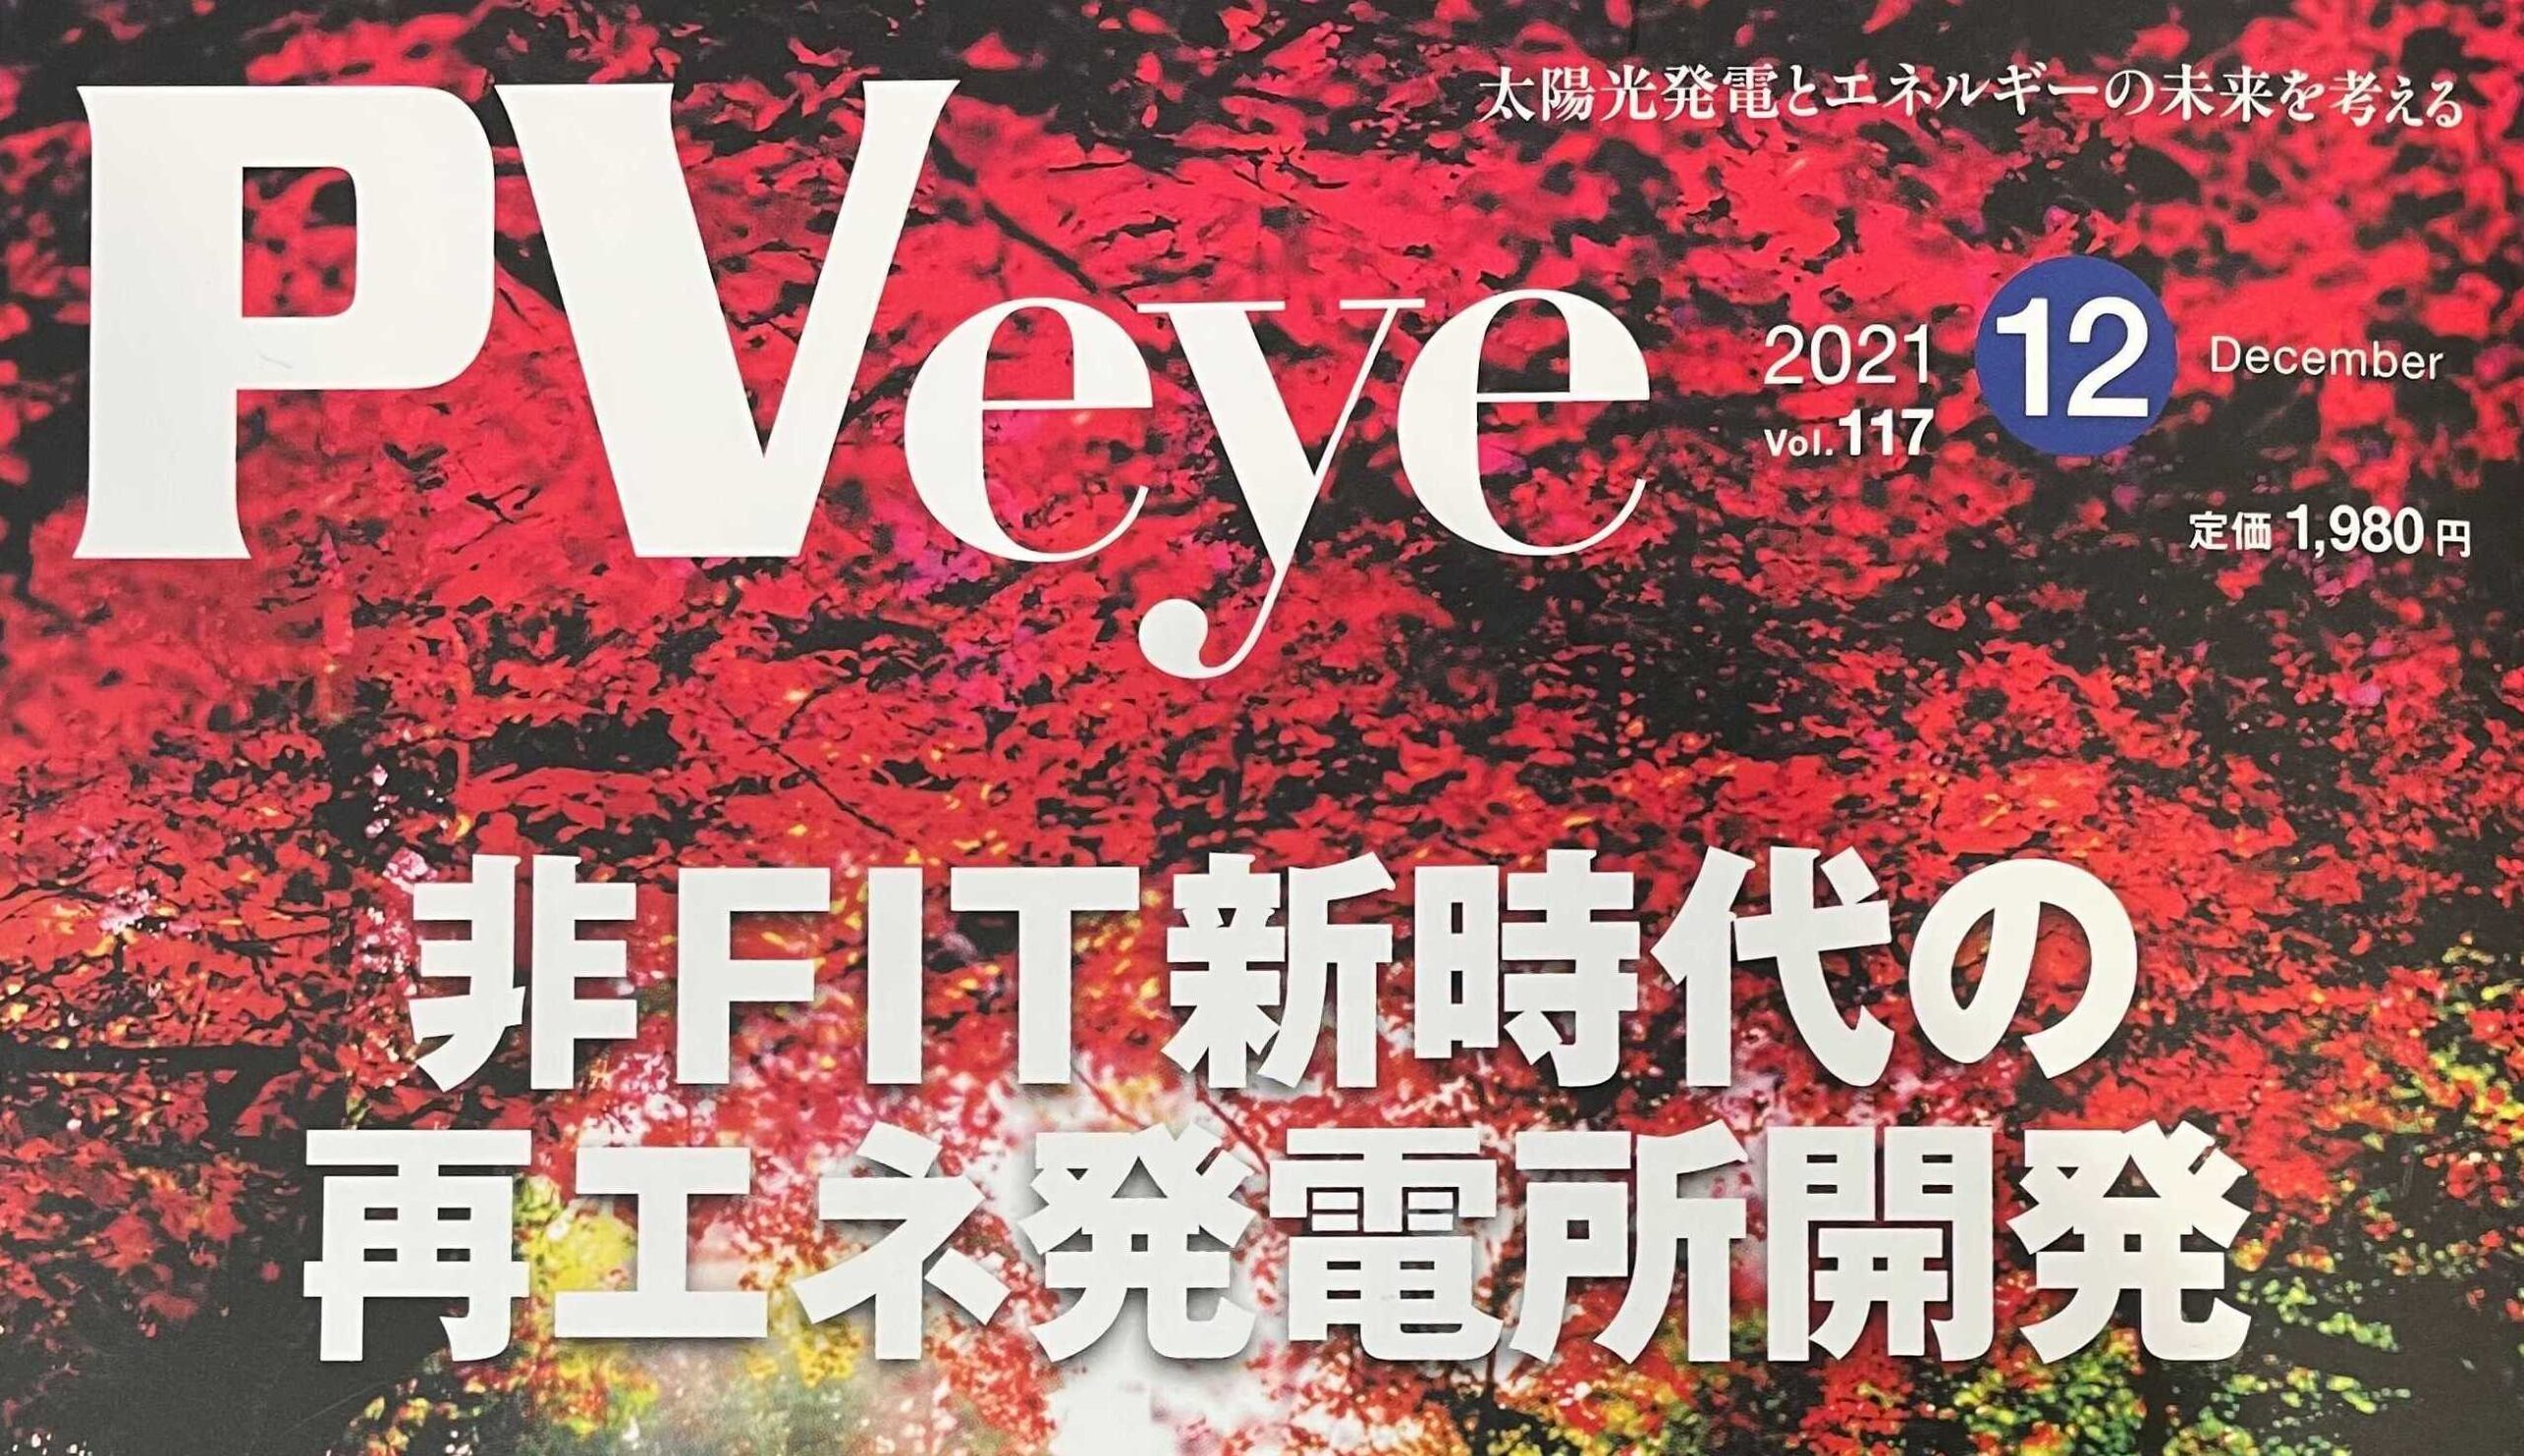 再生可能エネルギーの専門メディア「PVeye」12月号に掲載されました